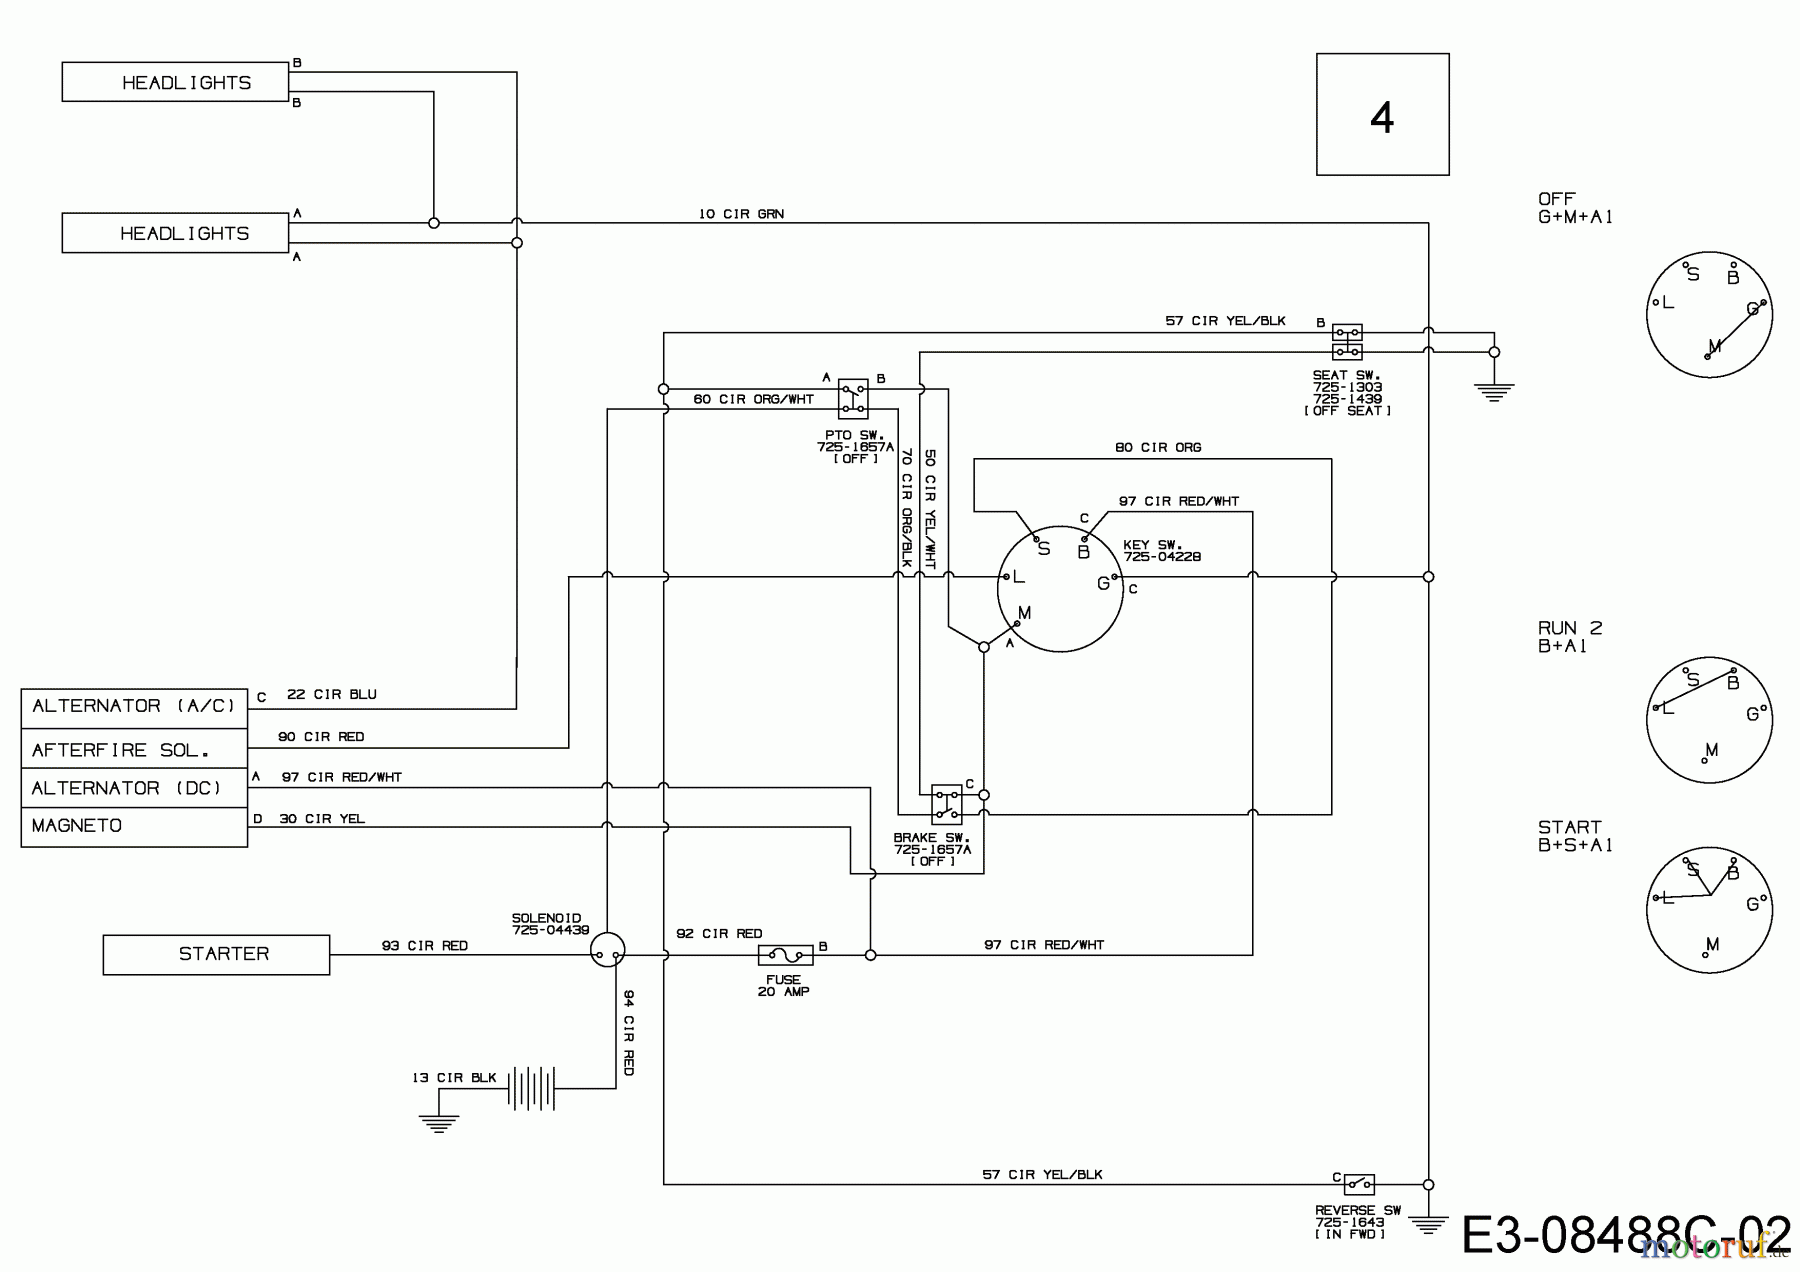  MTD Lawn tractors 420/38 13A2765F308  (2017) Wiring diagram